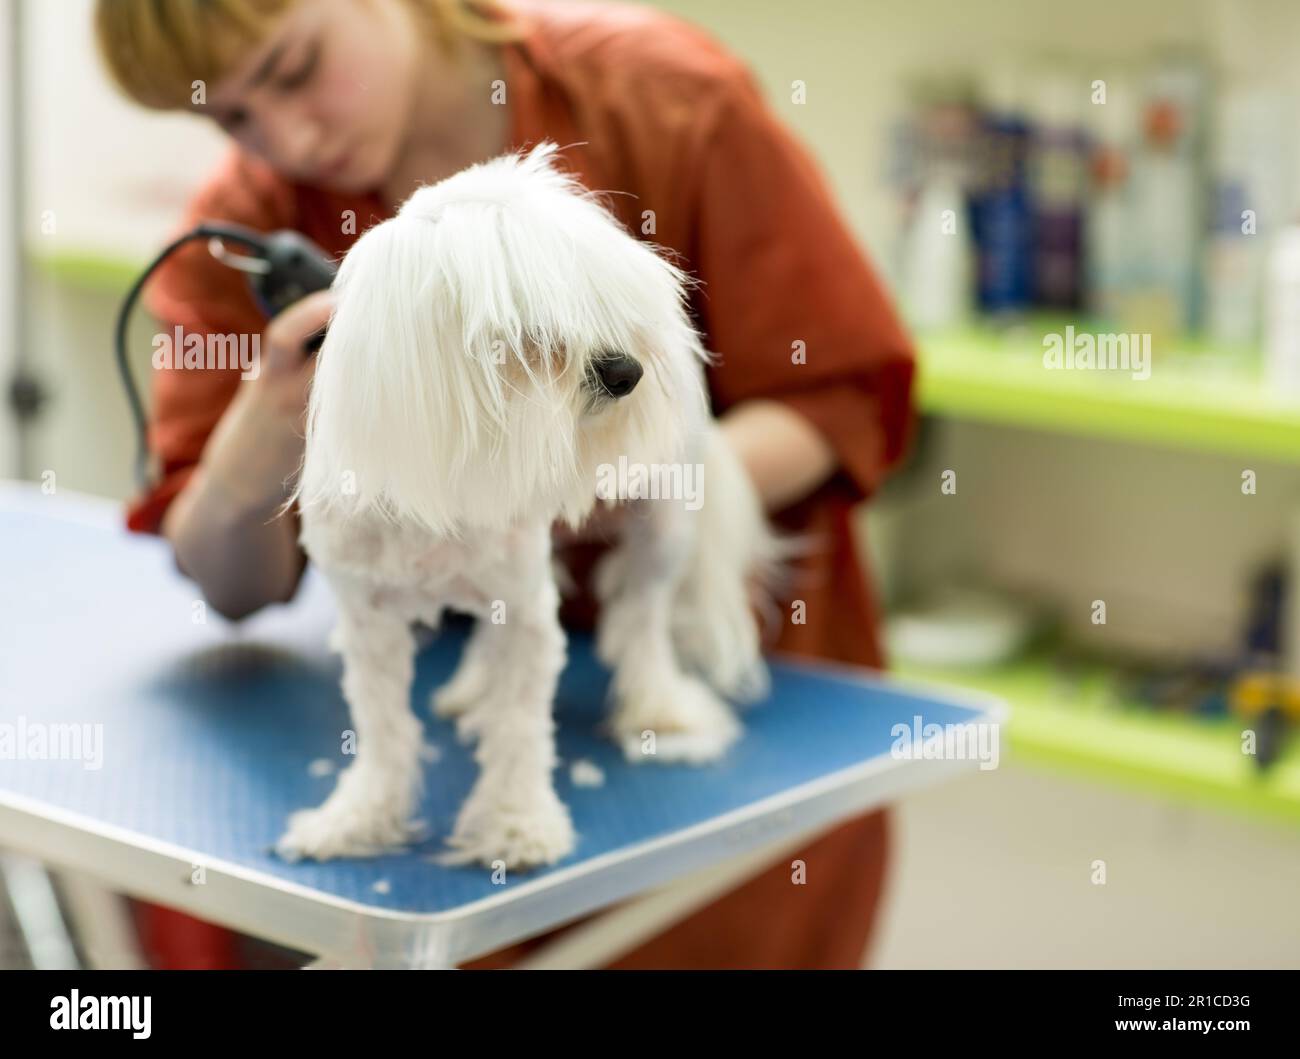 Il cane viene tagliato al PET Spa Grooming Salon. Primo piano di cane. il cane ha un taglio di capelli. groomer in background. Groomer concept.trimming il cane maltese vicino Foto Stock